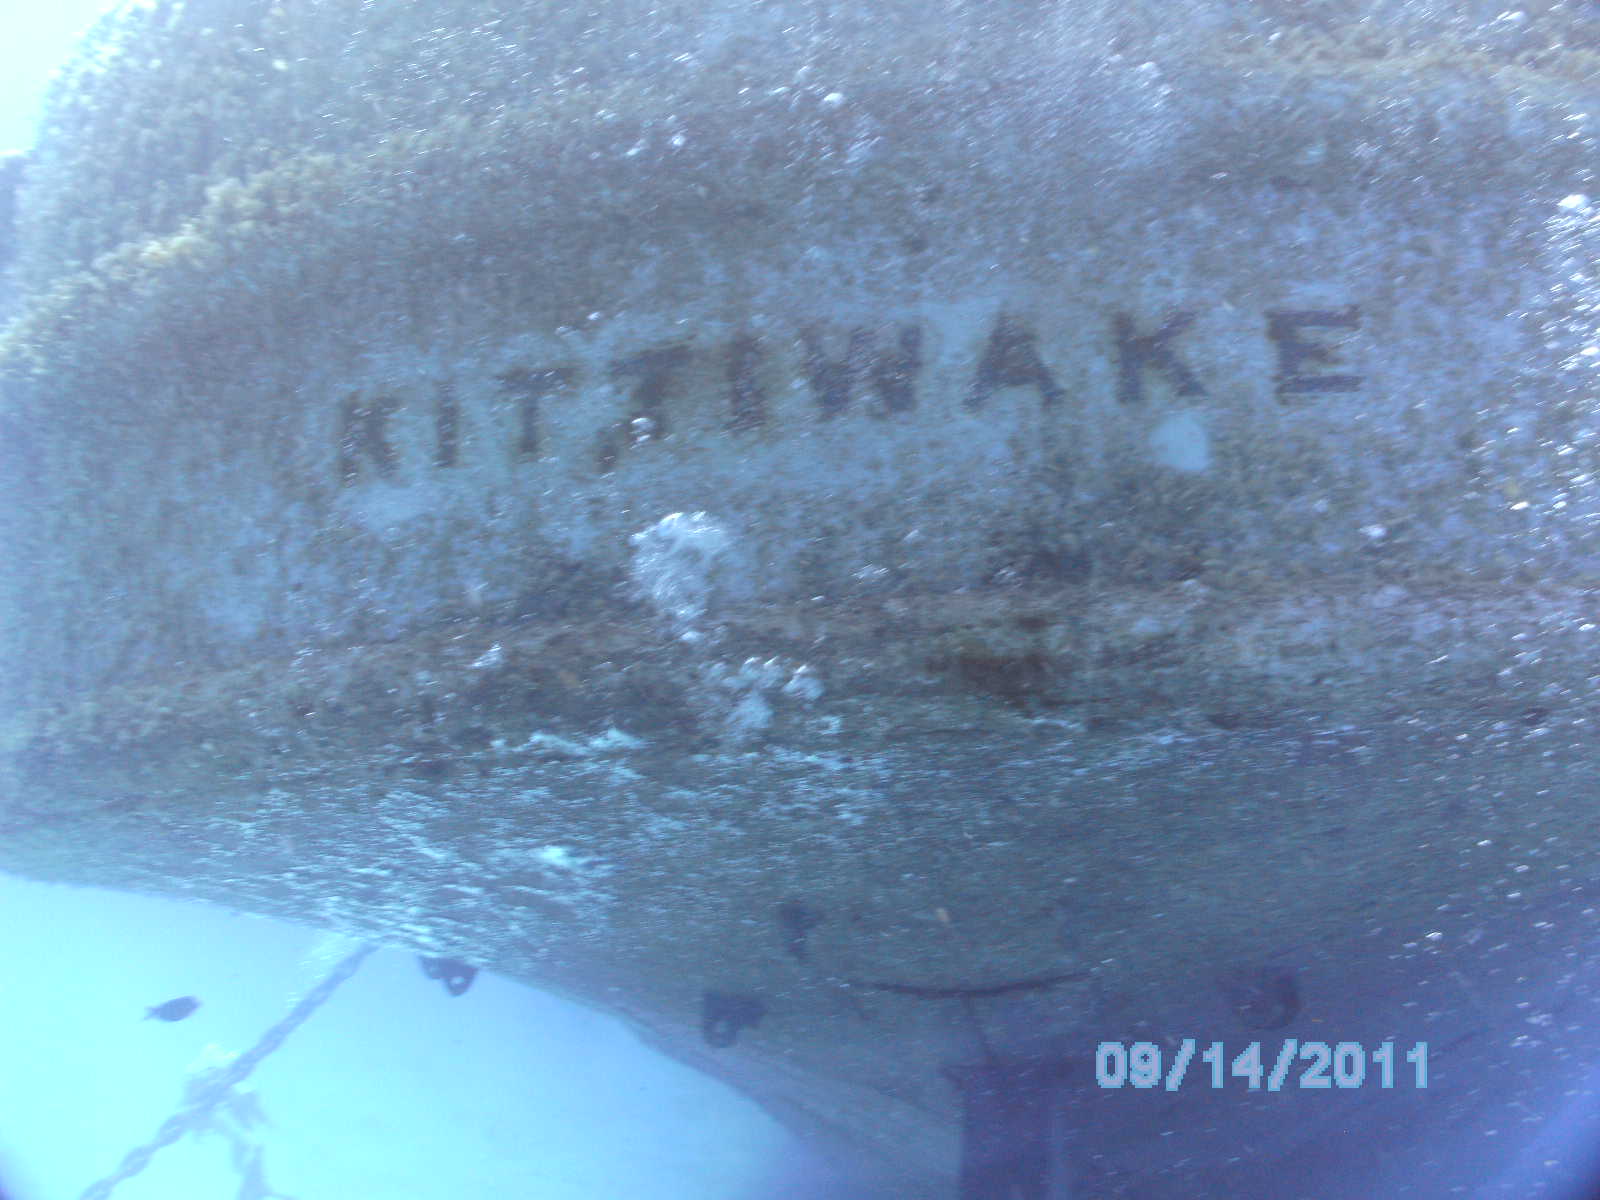 Kittiwake